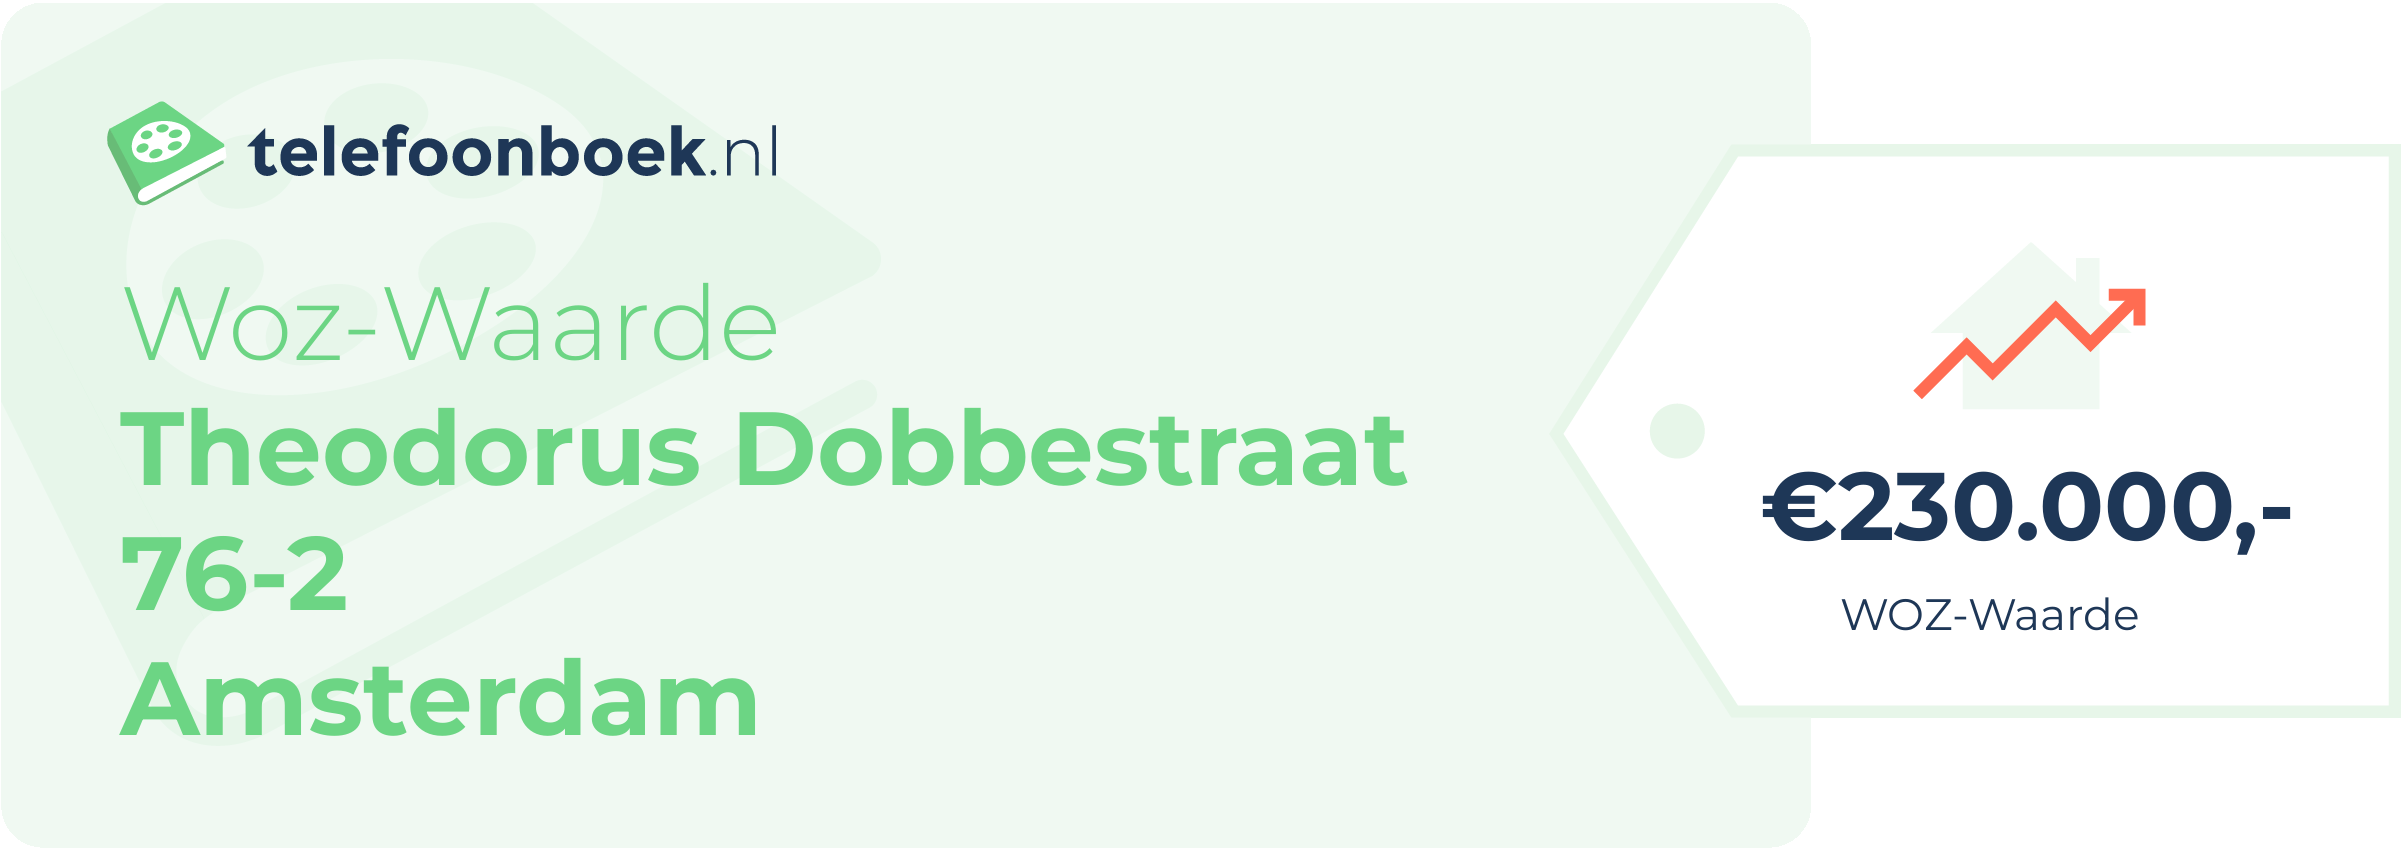 WOZ-waarde Theodorus Dobbestraat 76-2 Amsterdam